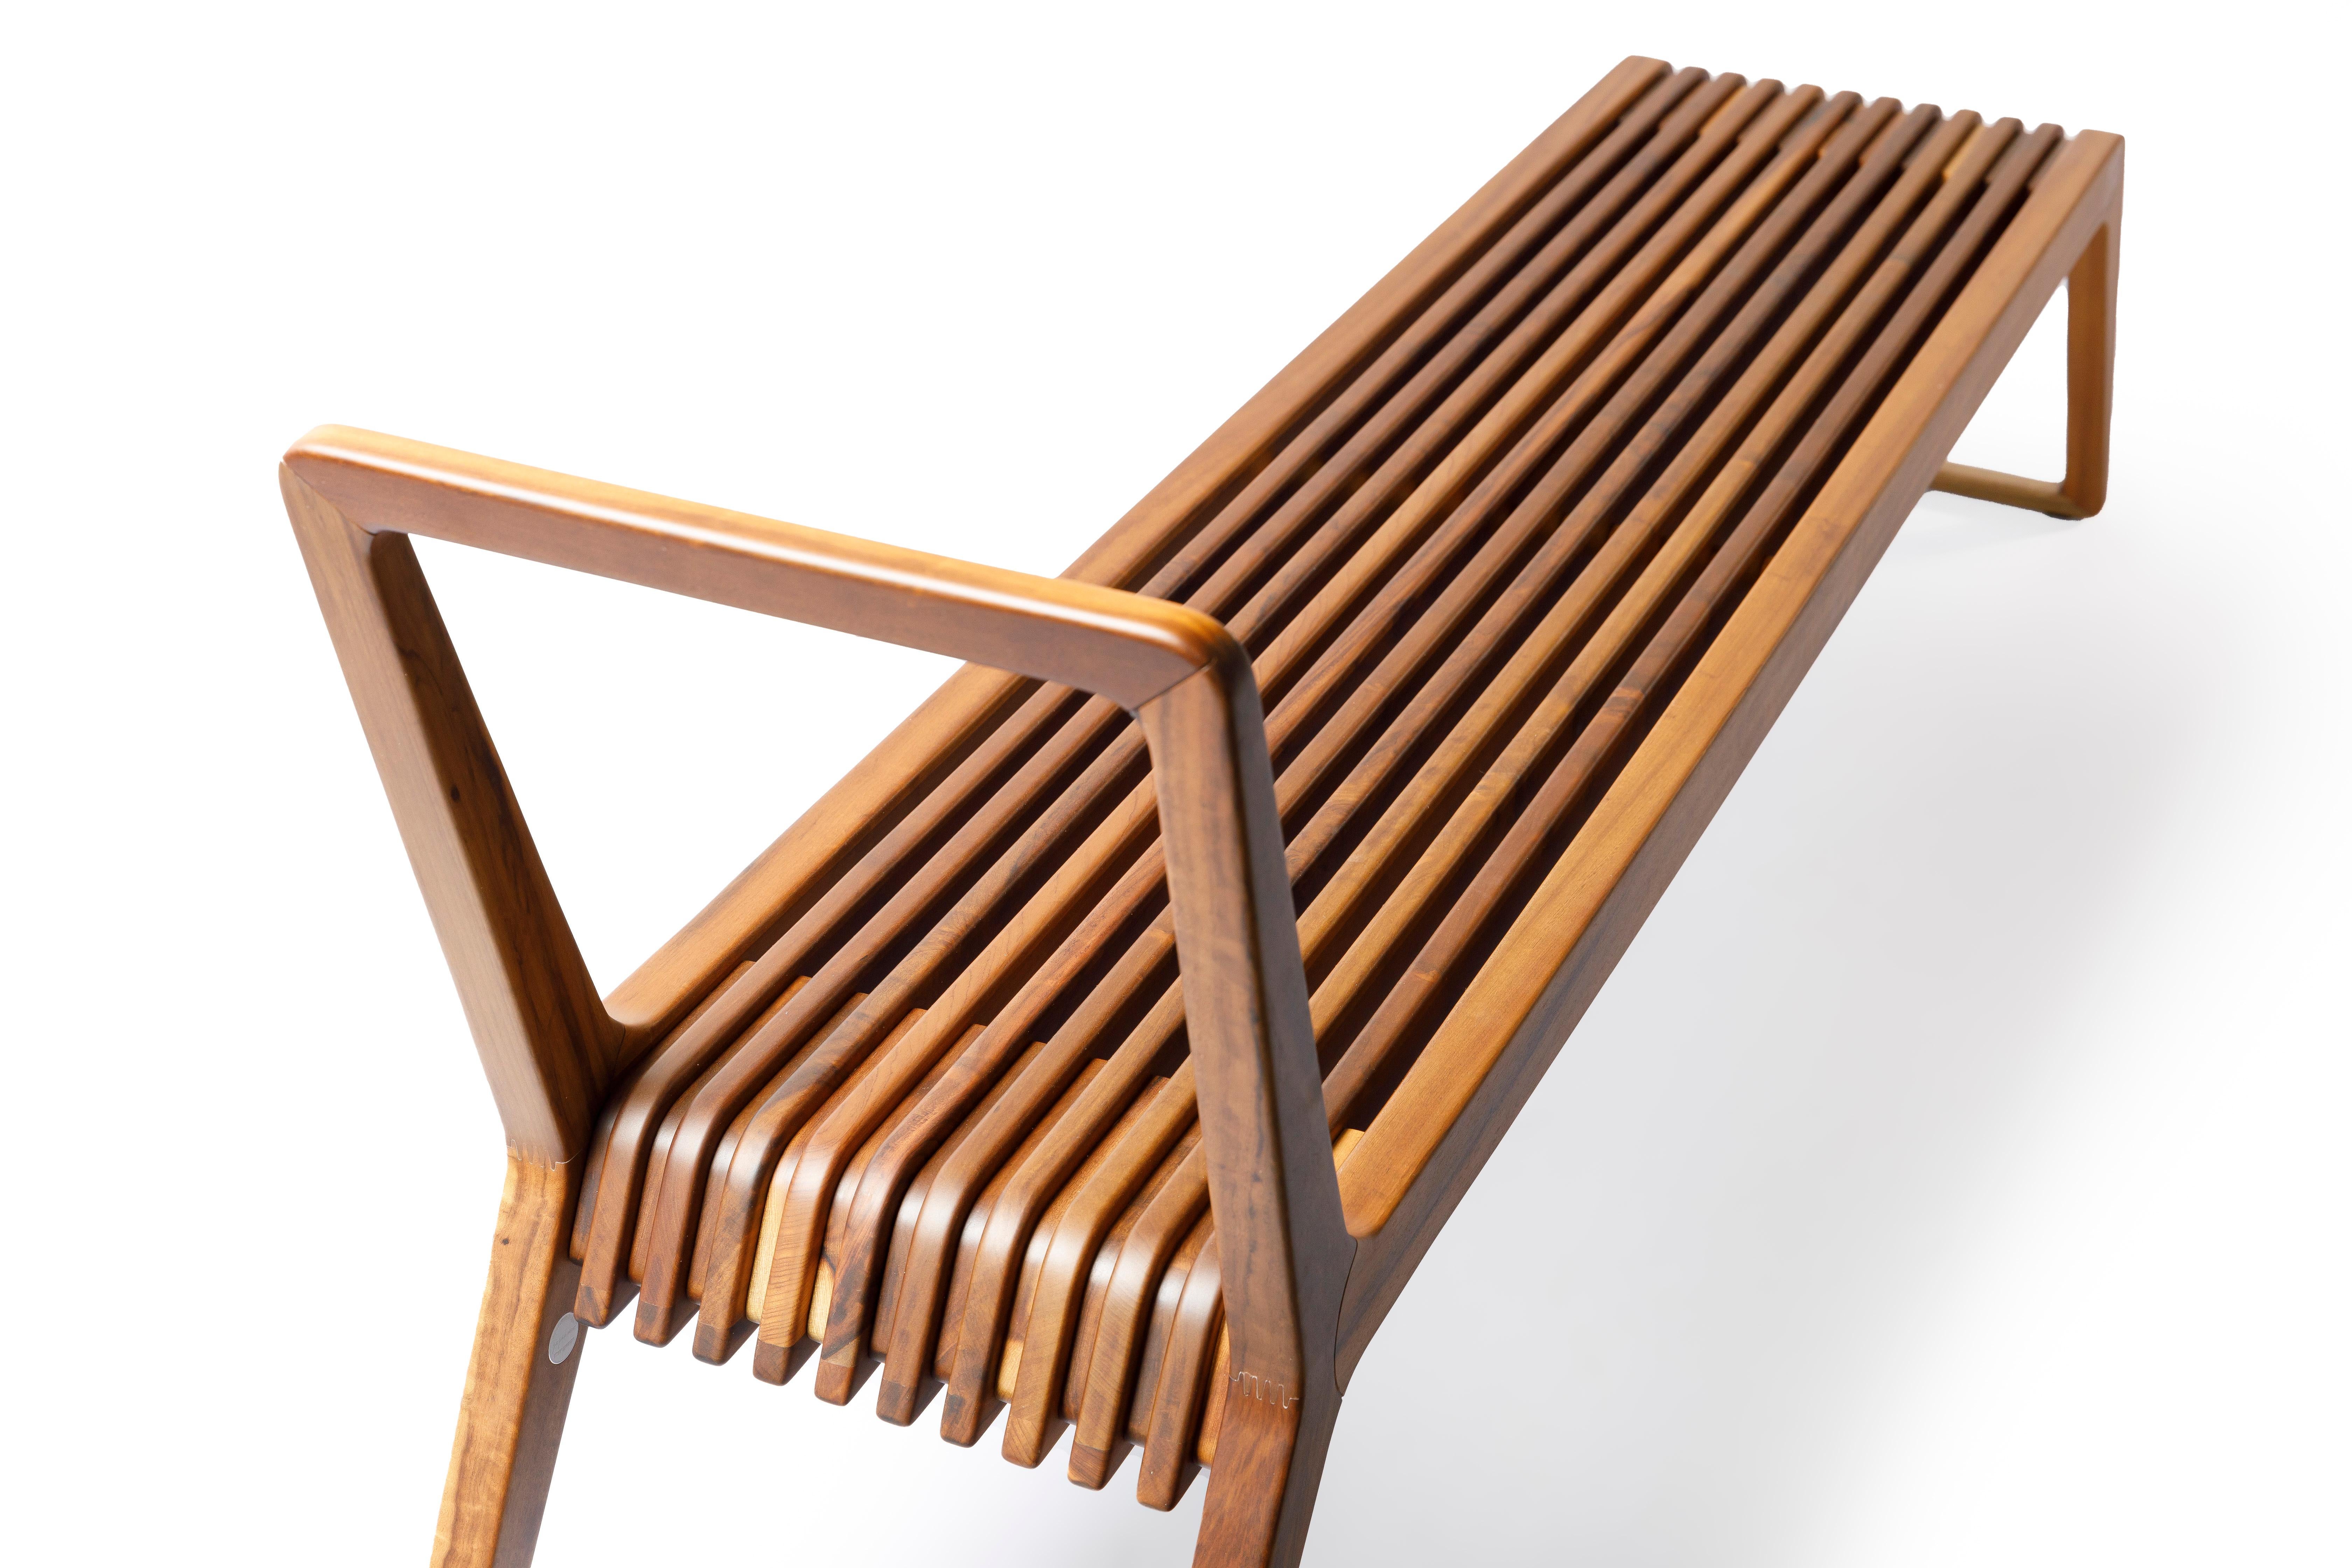 Die Buzios Bank ist ein einzigartiges und elegantes Möbelstück, das vom brasilianischen Industriedesigner Guto Indio da Costa entworfen wurde. Die Bank ist inspiriert von der natürlichen Schönheit und den organischen Formen von Buzios, einer